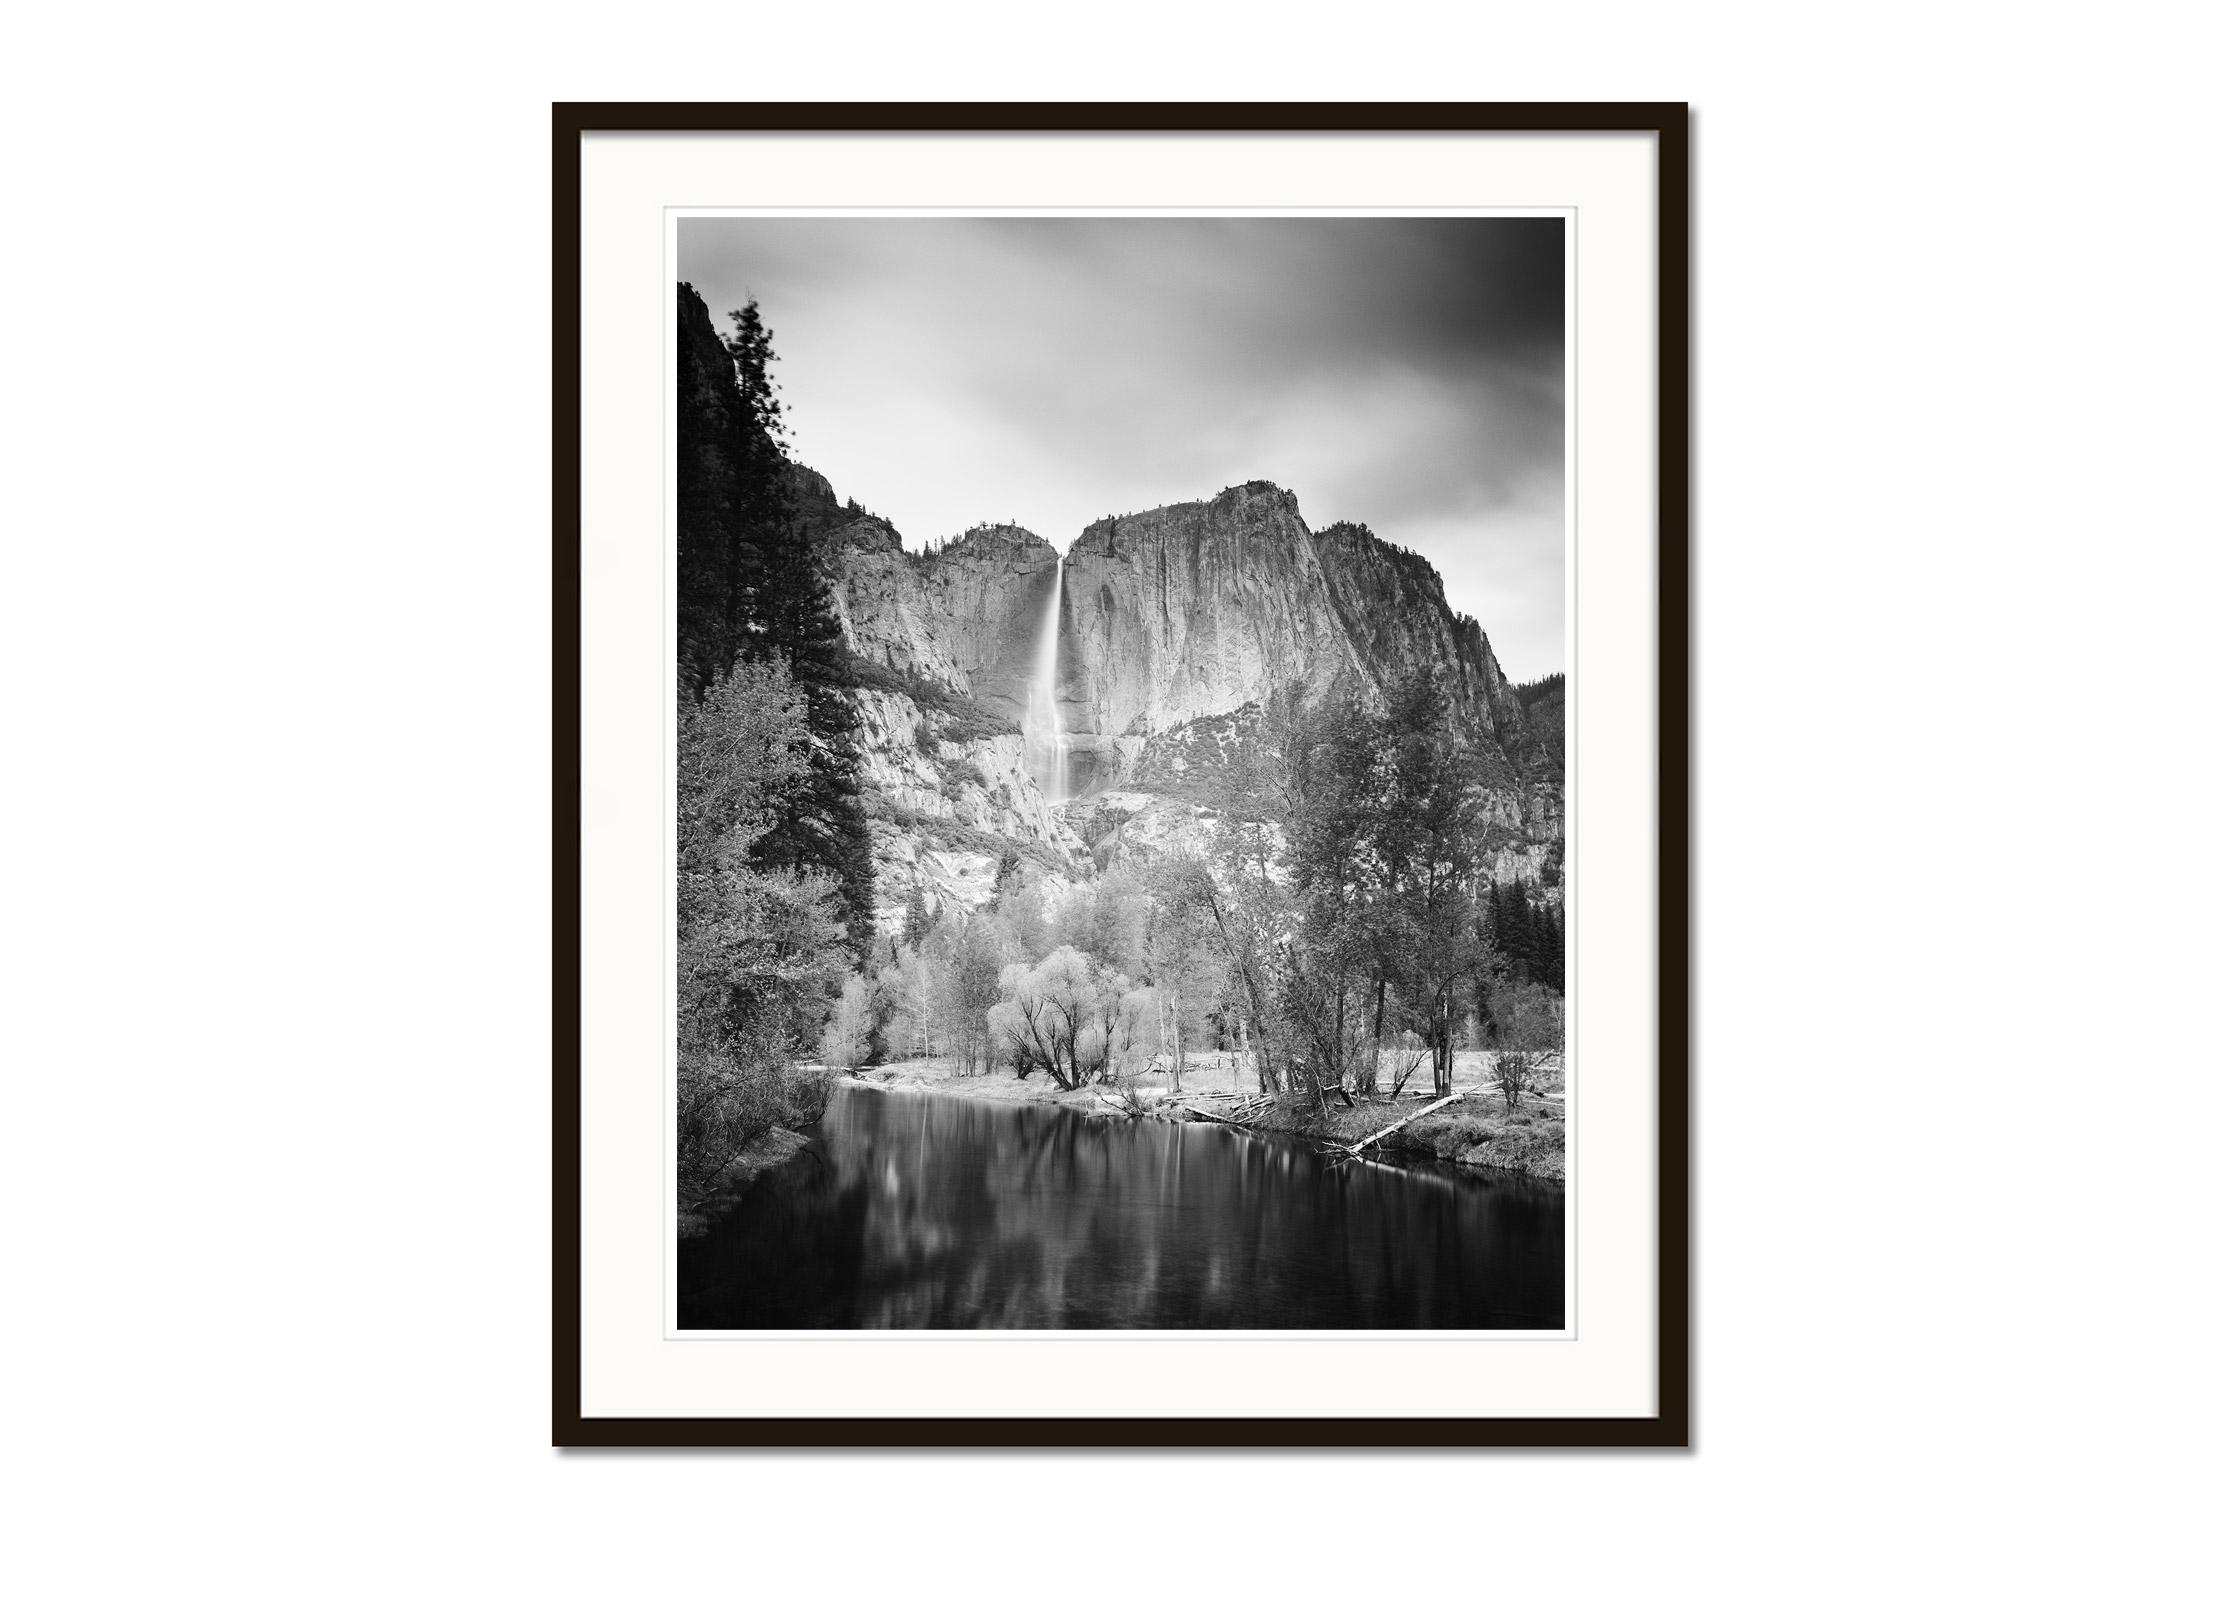 Upper Yosemite Falls, California, USA, Schwarz-Weiß-Fotografie, Landschaft (Grau), Black and White Photograph, von Gerald Berghammer, Ina Forstinger